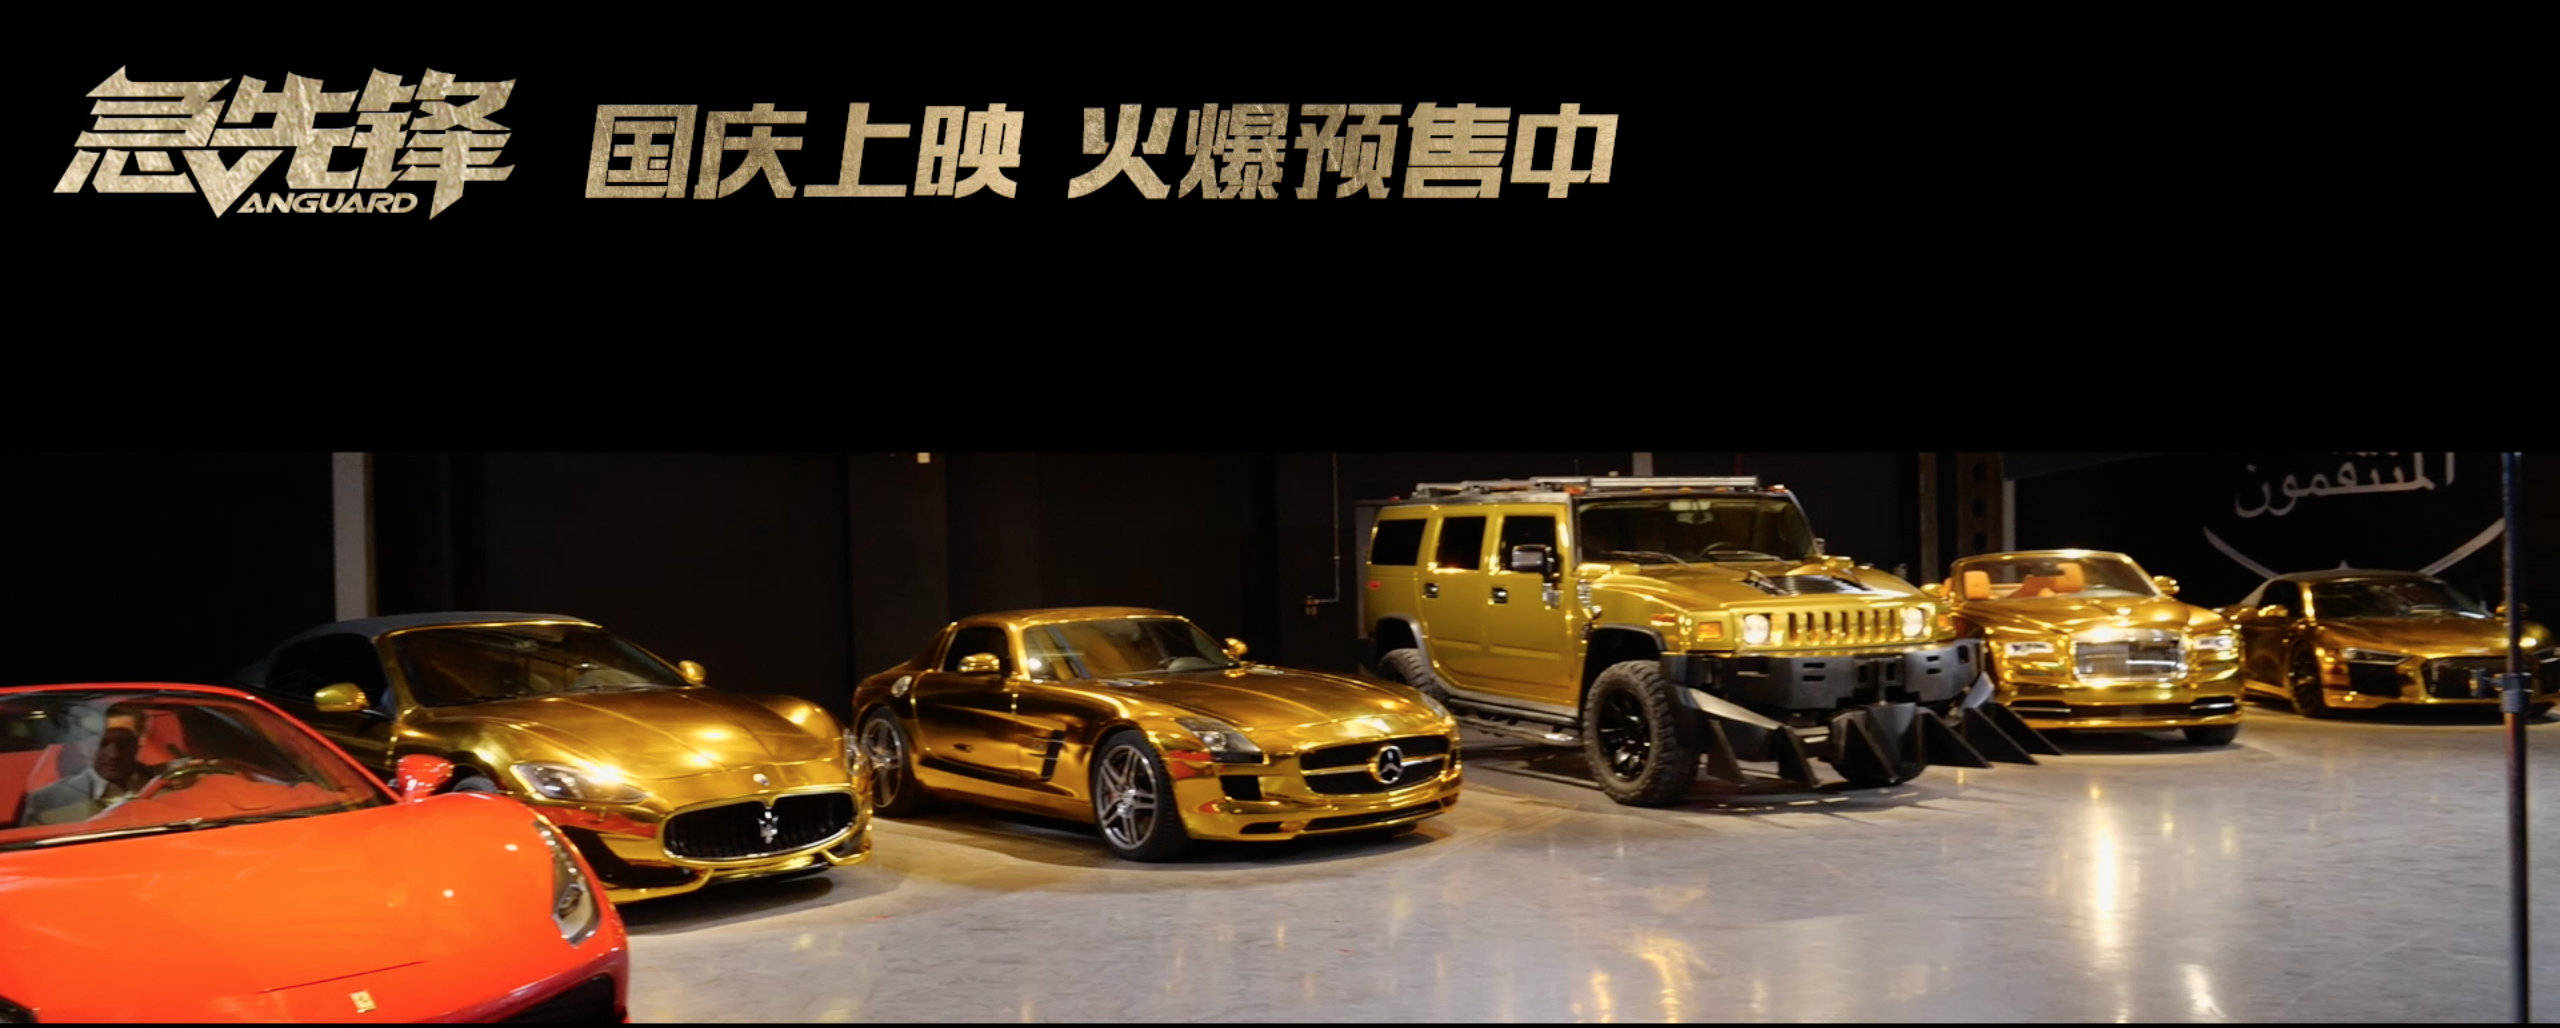 电影《急先锋》发布"迪拜黄金车"特辑 8亿美金迪拜街头漂移竞速